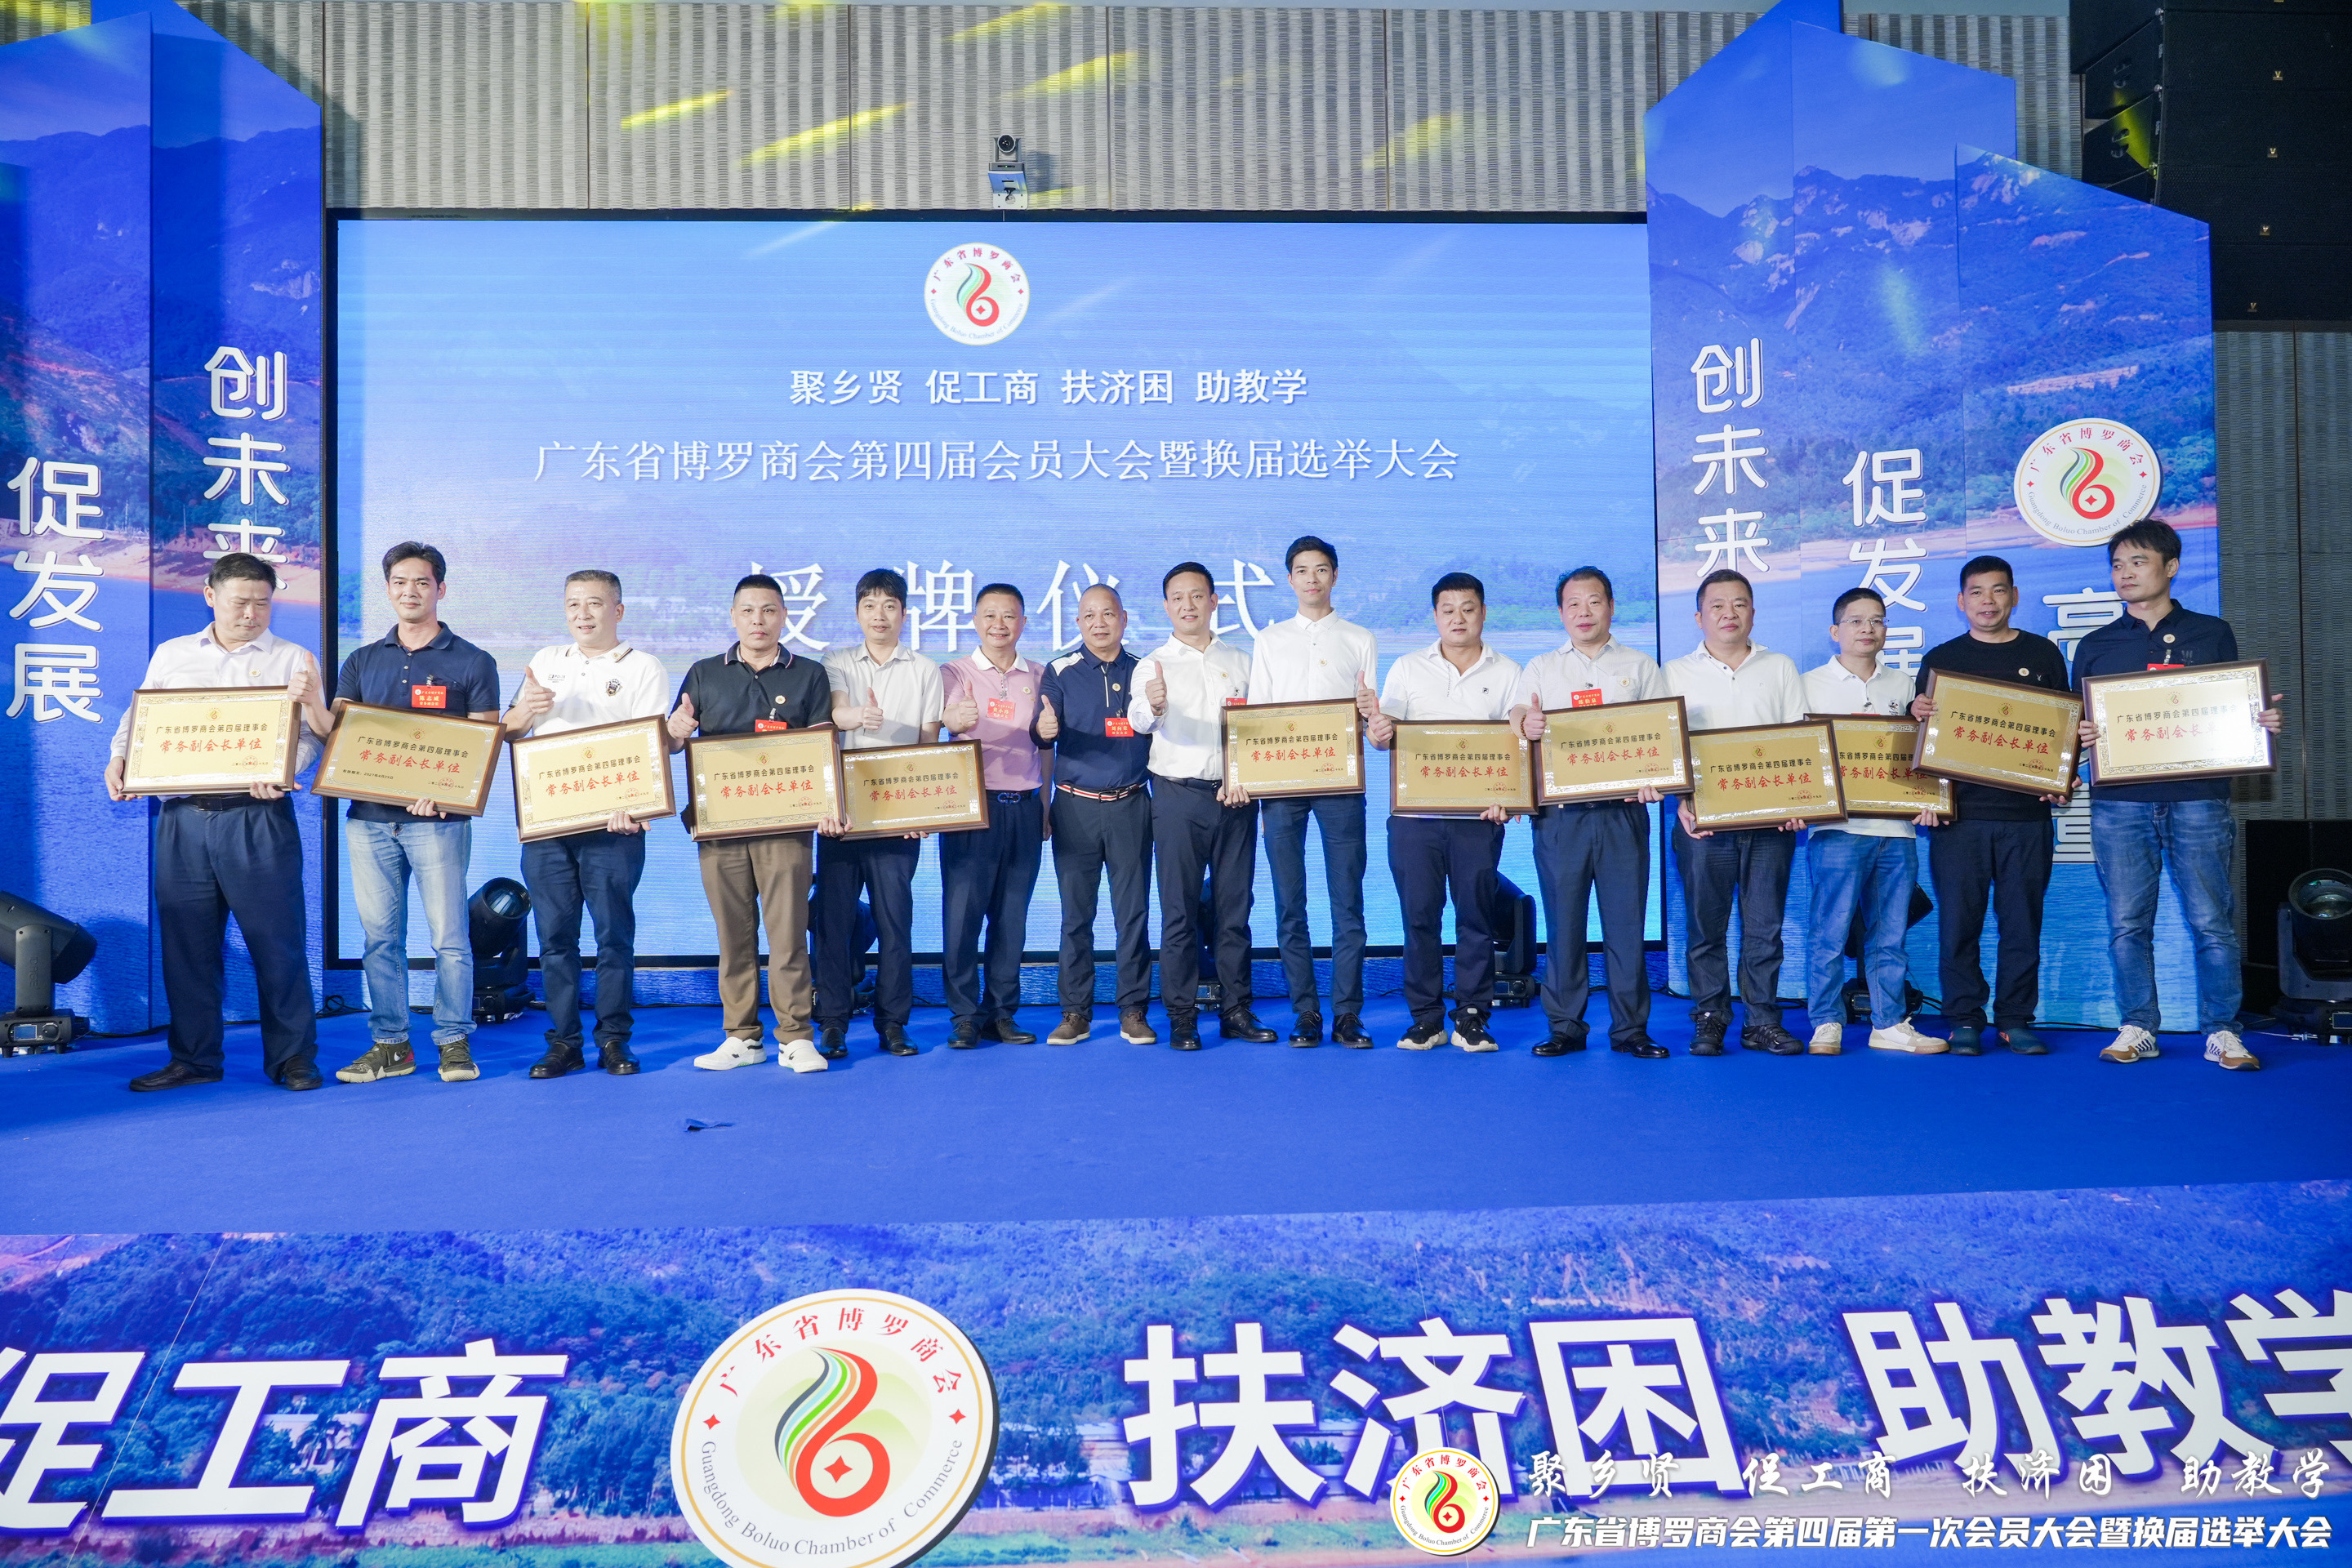  Dongguan Gaohua Eco Packaging Company Nyumbangake Dana Kanggo Siswa Daerah Terpencil Ing 2023-Kothak Rumah Tangga/Kothak Kertas/Kothak Buah/Kotak Karton 